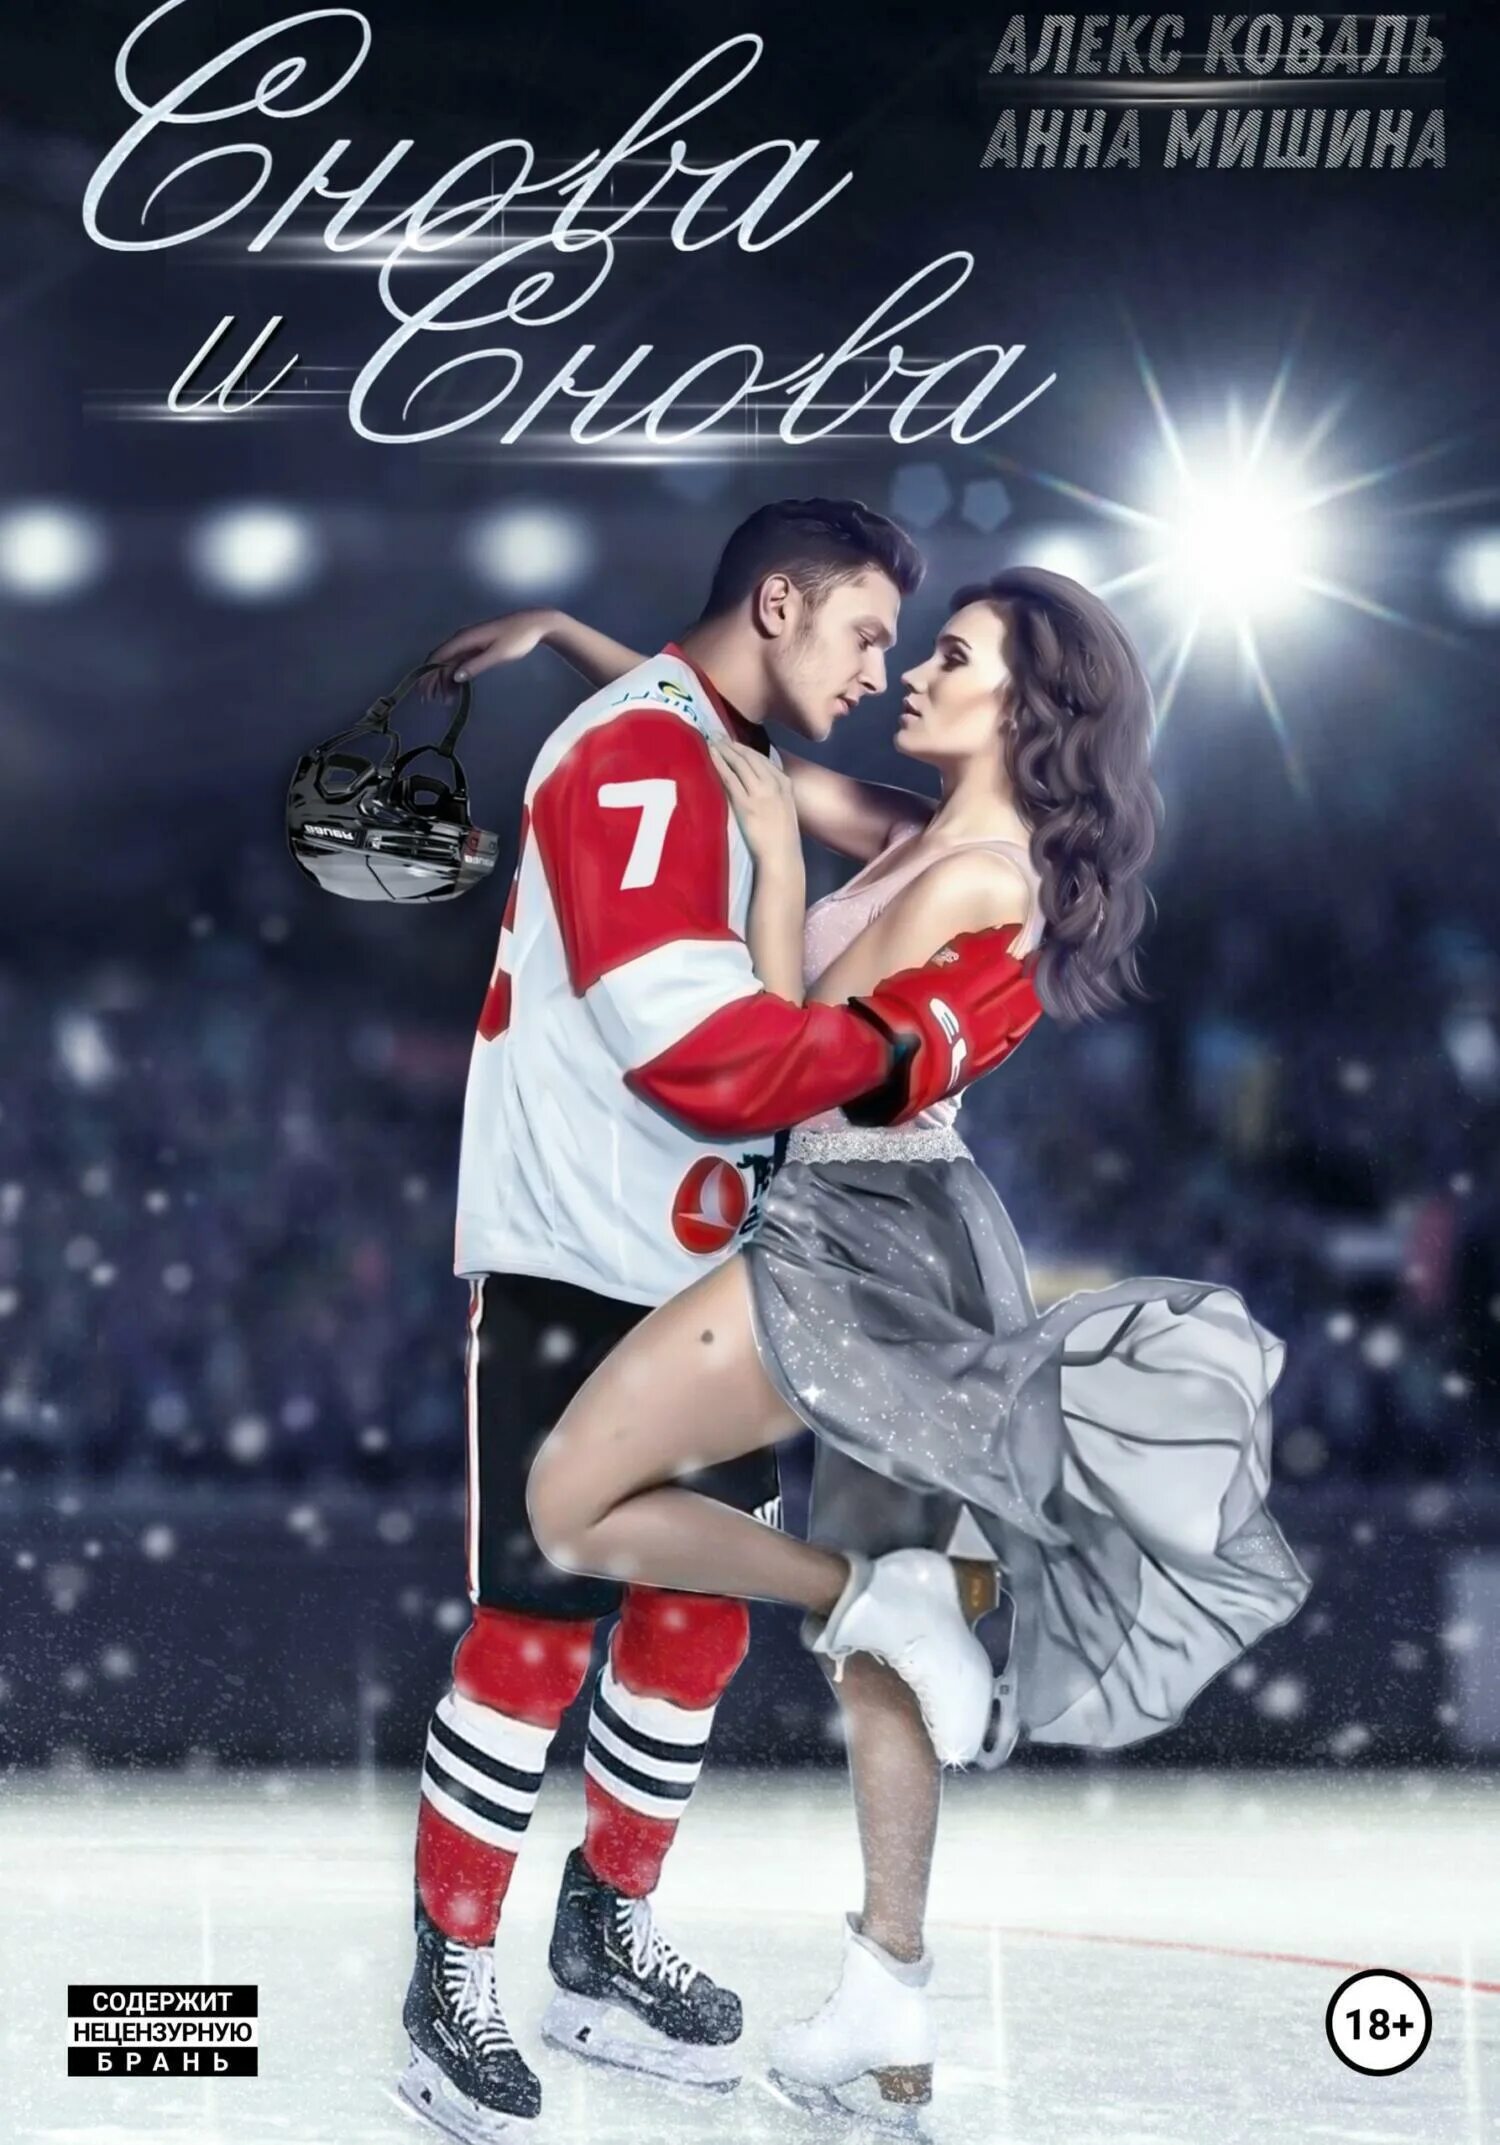 Современные любовные романы. Книга про хоккеистов и любовь. Современные романы про хоккей. Современные любовные романы хоккей.